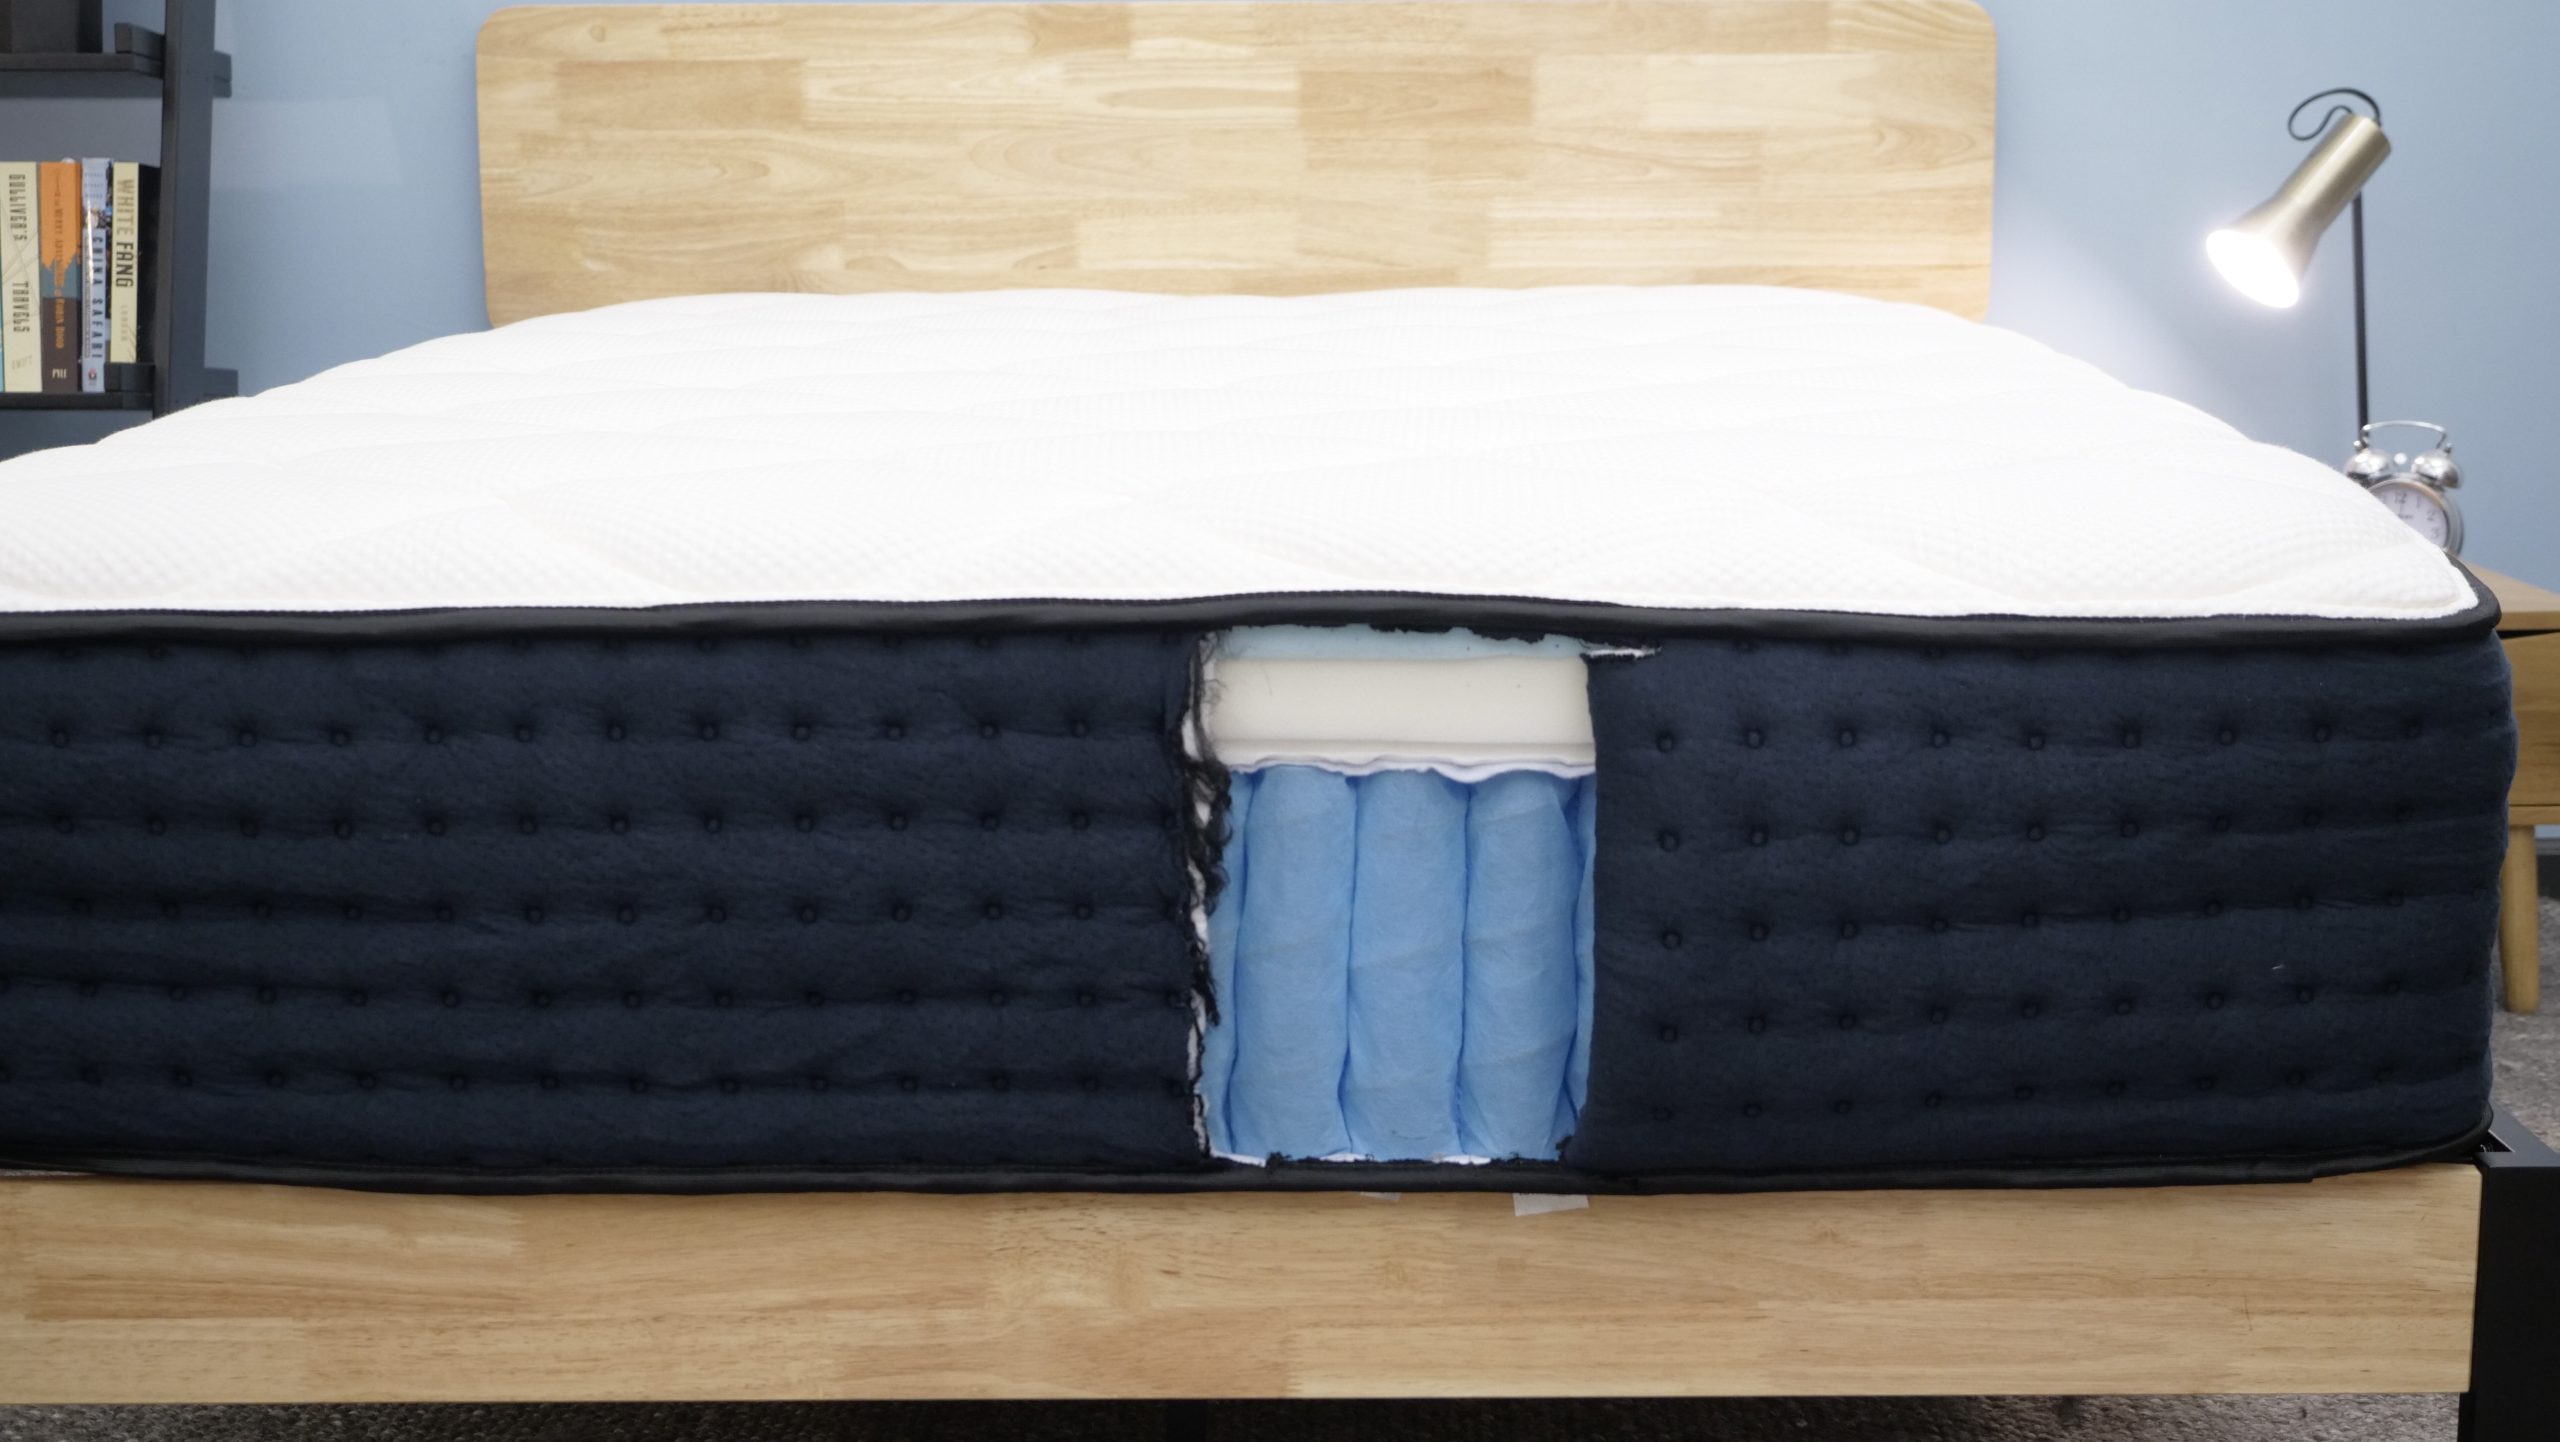 Take a closer look at the mattress construction of the original DreamCloud mattress